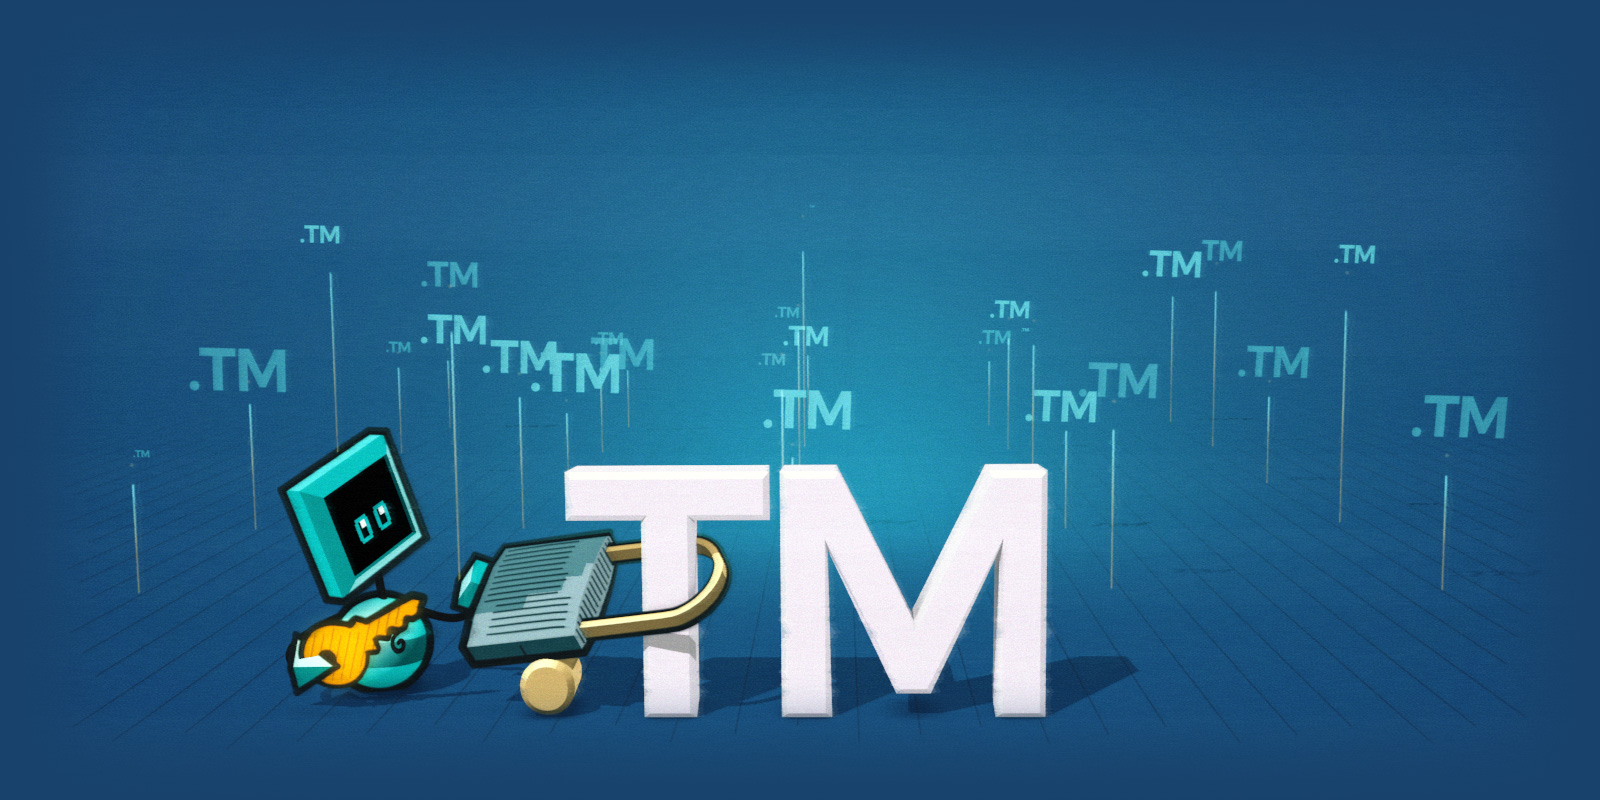 .TM 域名现在开放非使用 Gandi 企业户服务的客户注册